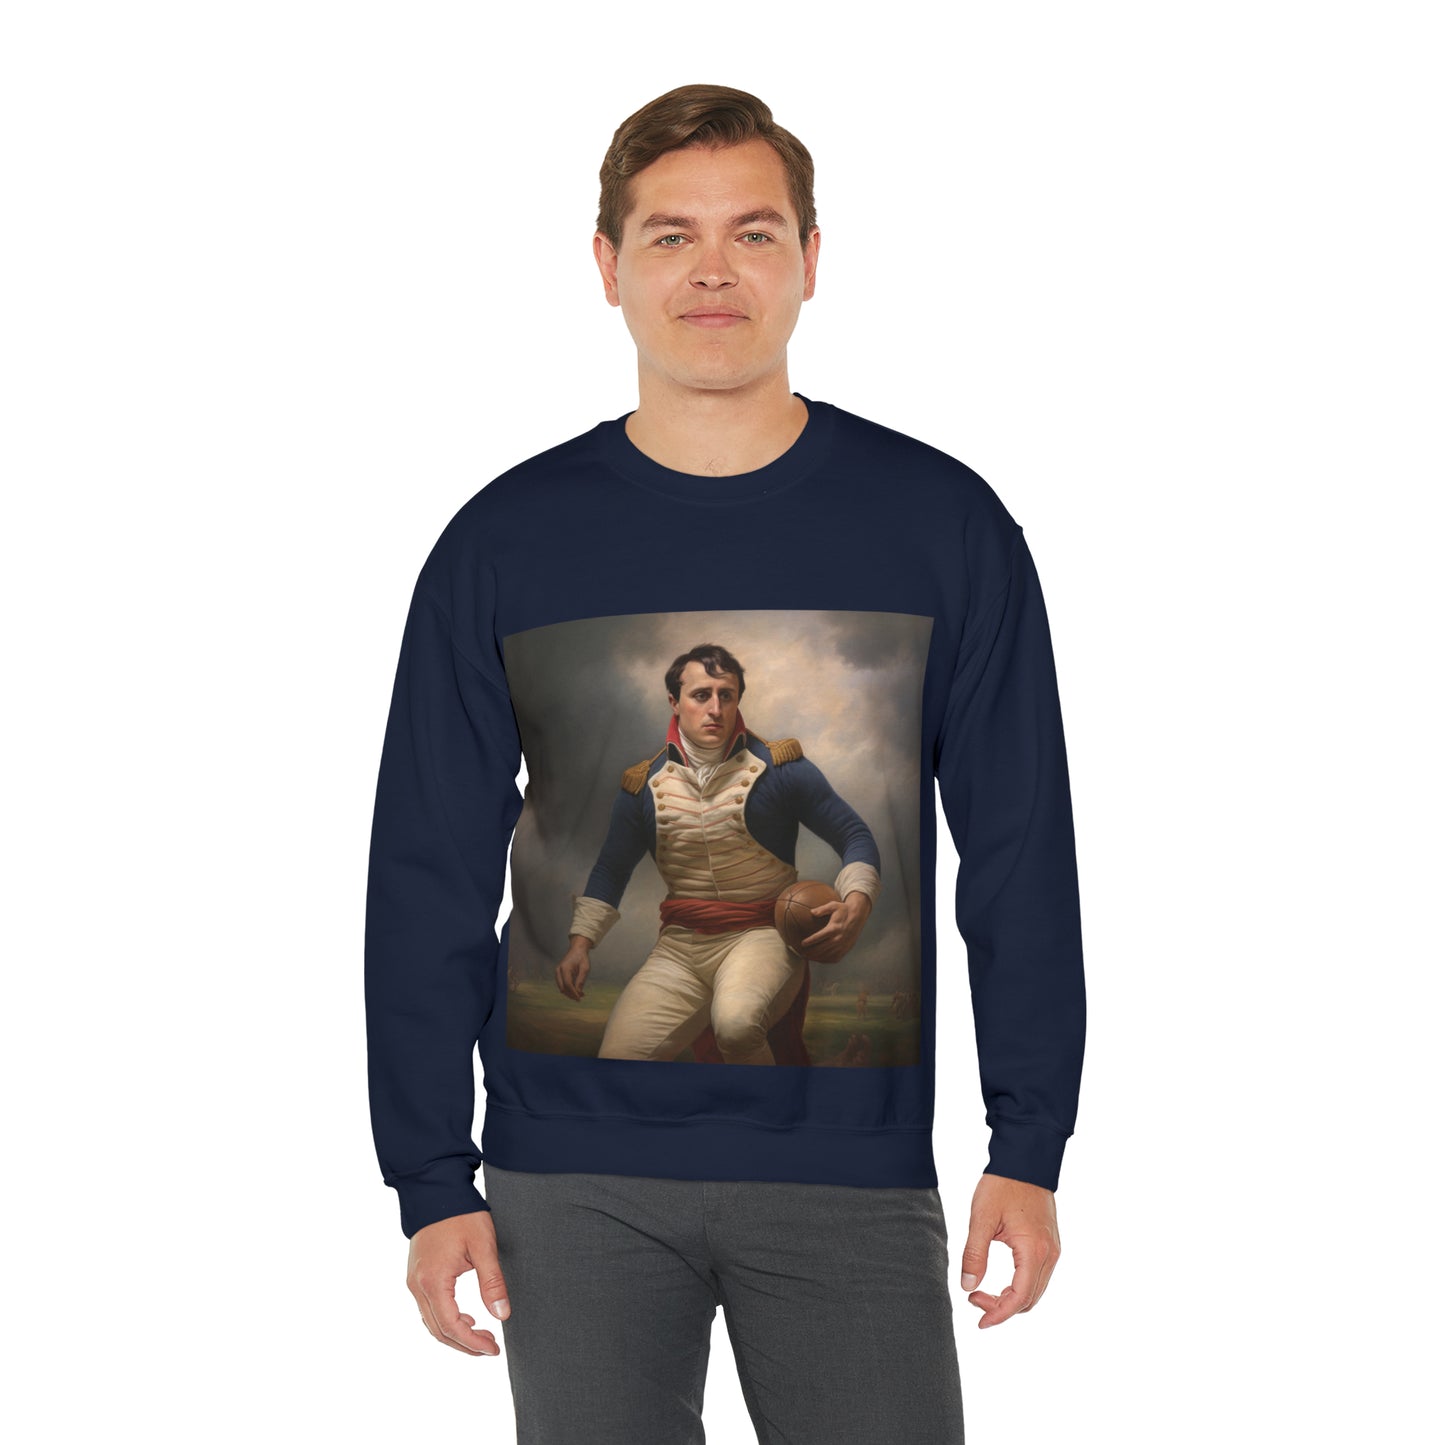 Napoleon Rugby - black sweatshirt